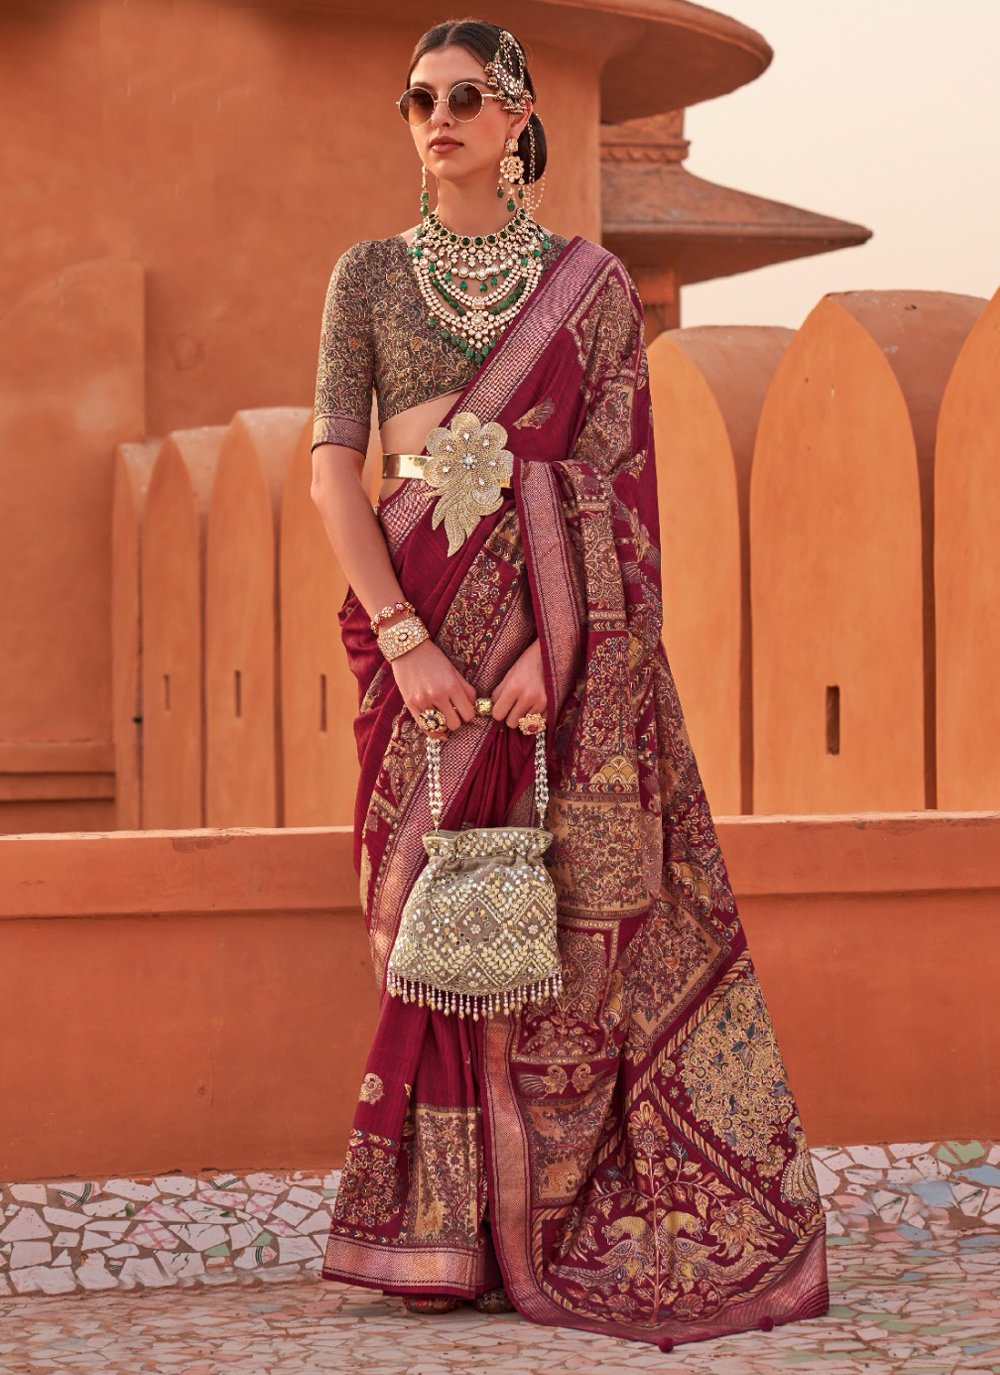 How to transform a saree into a lehenga or a skirt - Quora